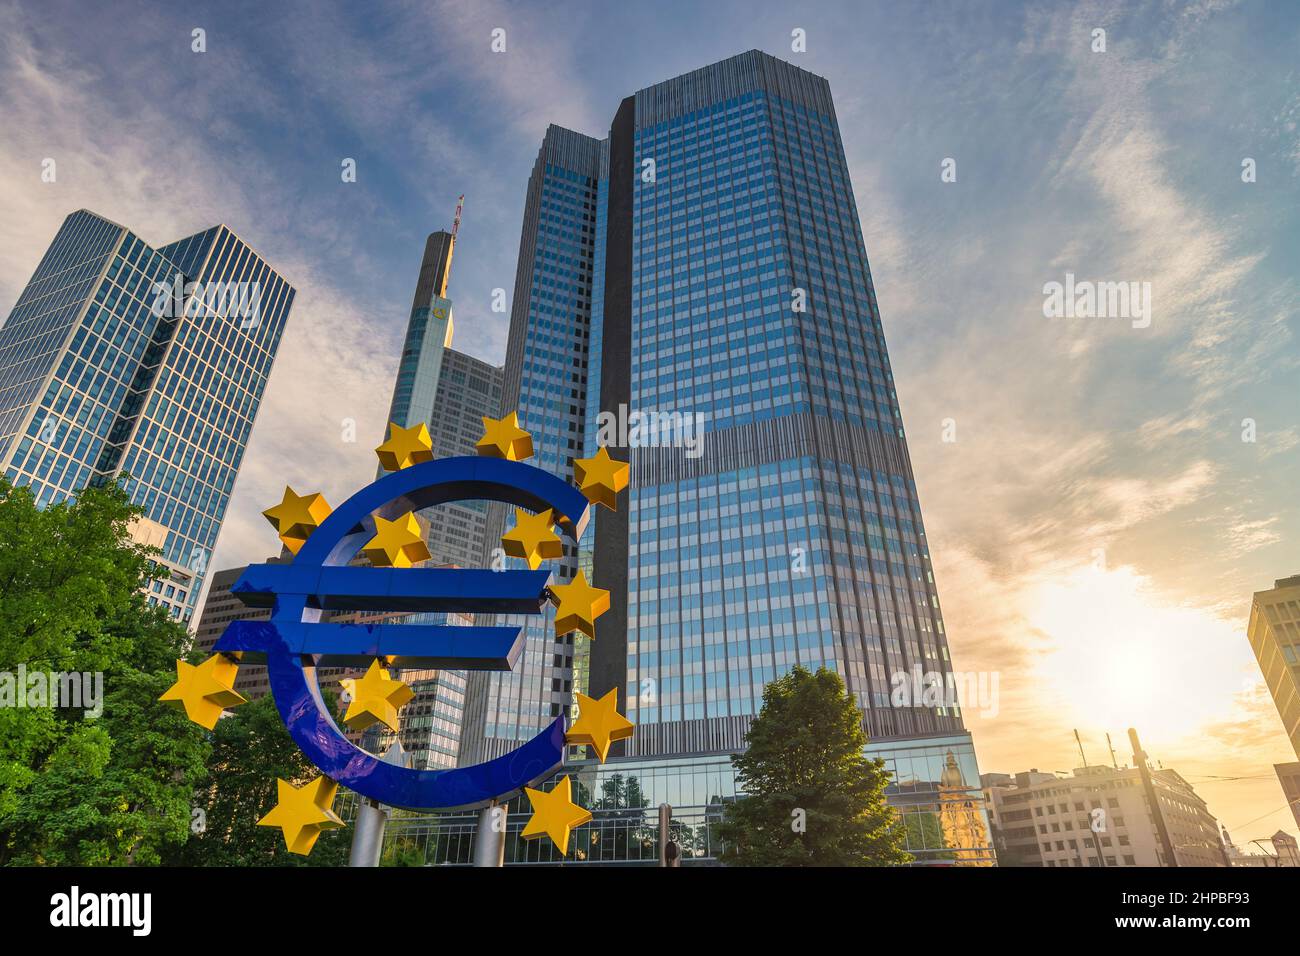 Francfort, Allemagne - 9 juillet 2017 : lever du soleil sur la ville à la Banque centrale européenne (BCE) et au panneau Euro Banque D'Images